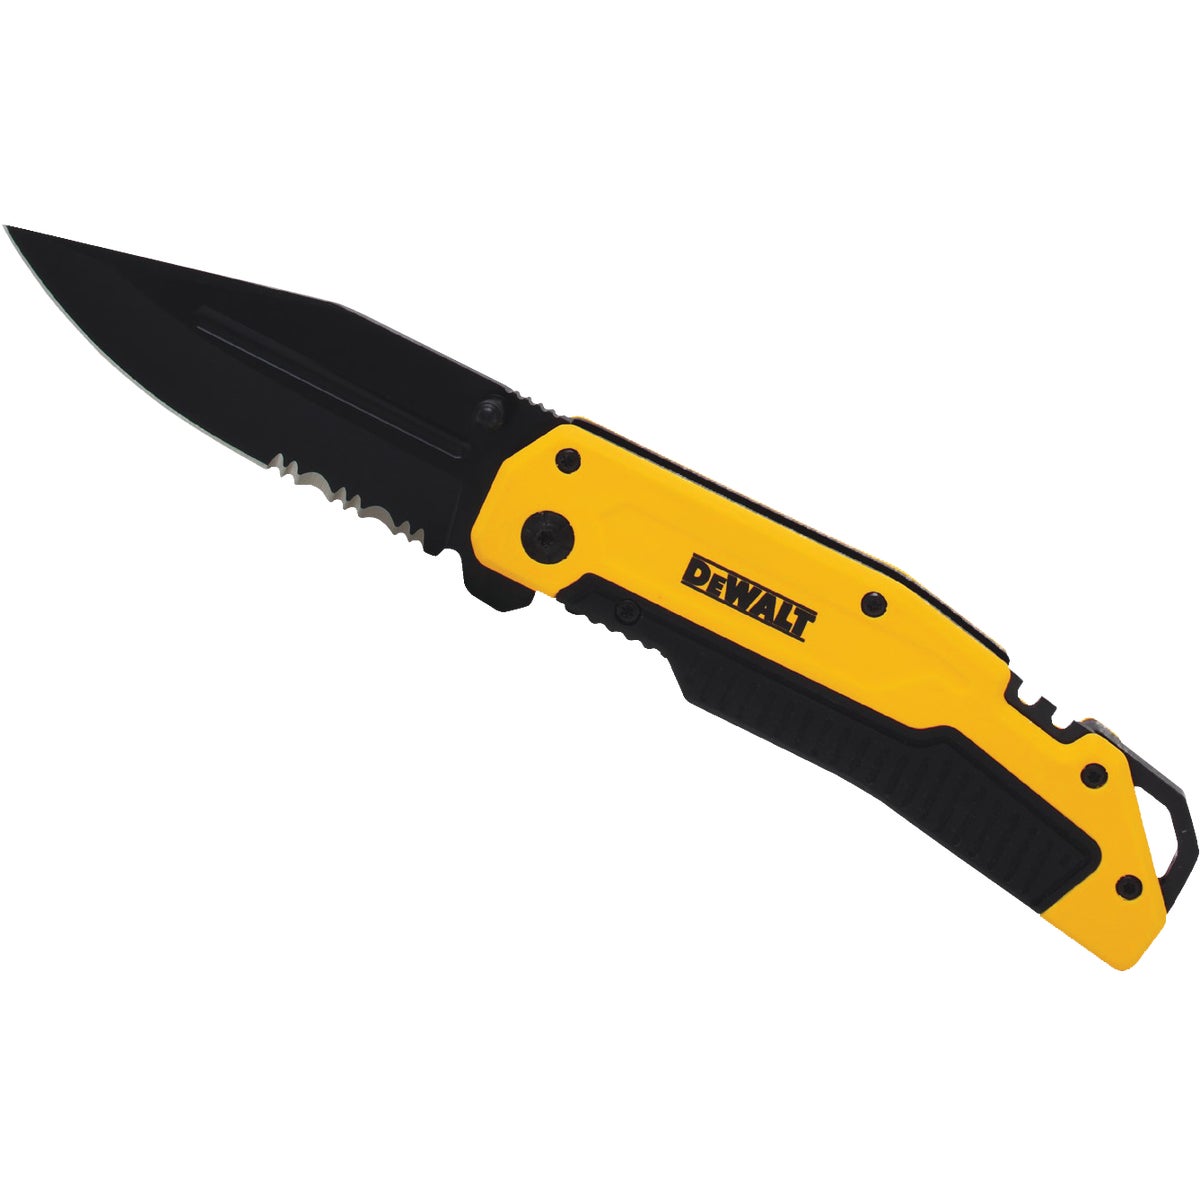 DEWALT 1-Blade 4-3/4 In. Premium Folding Pocket Knife